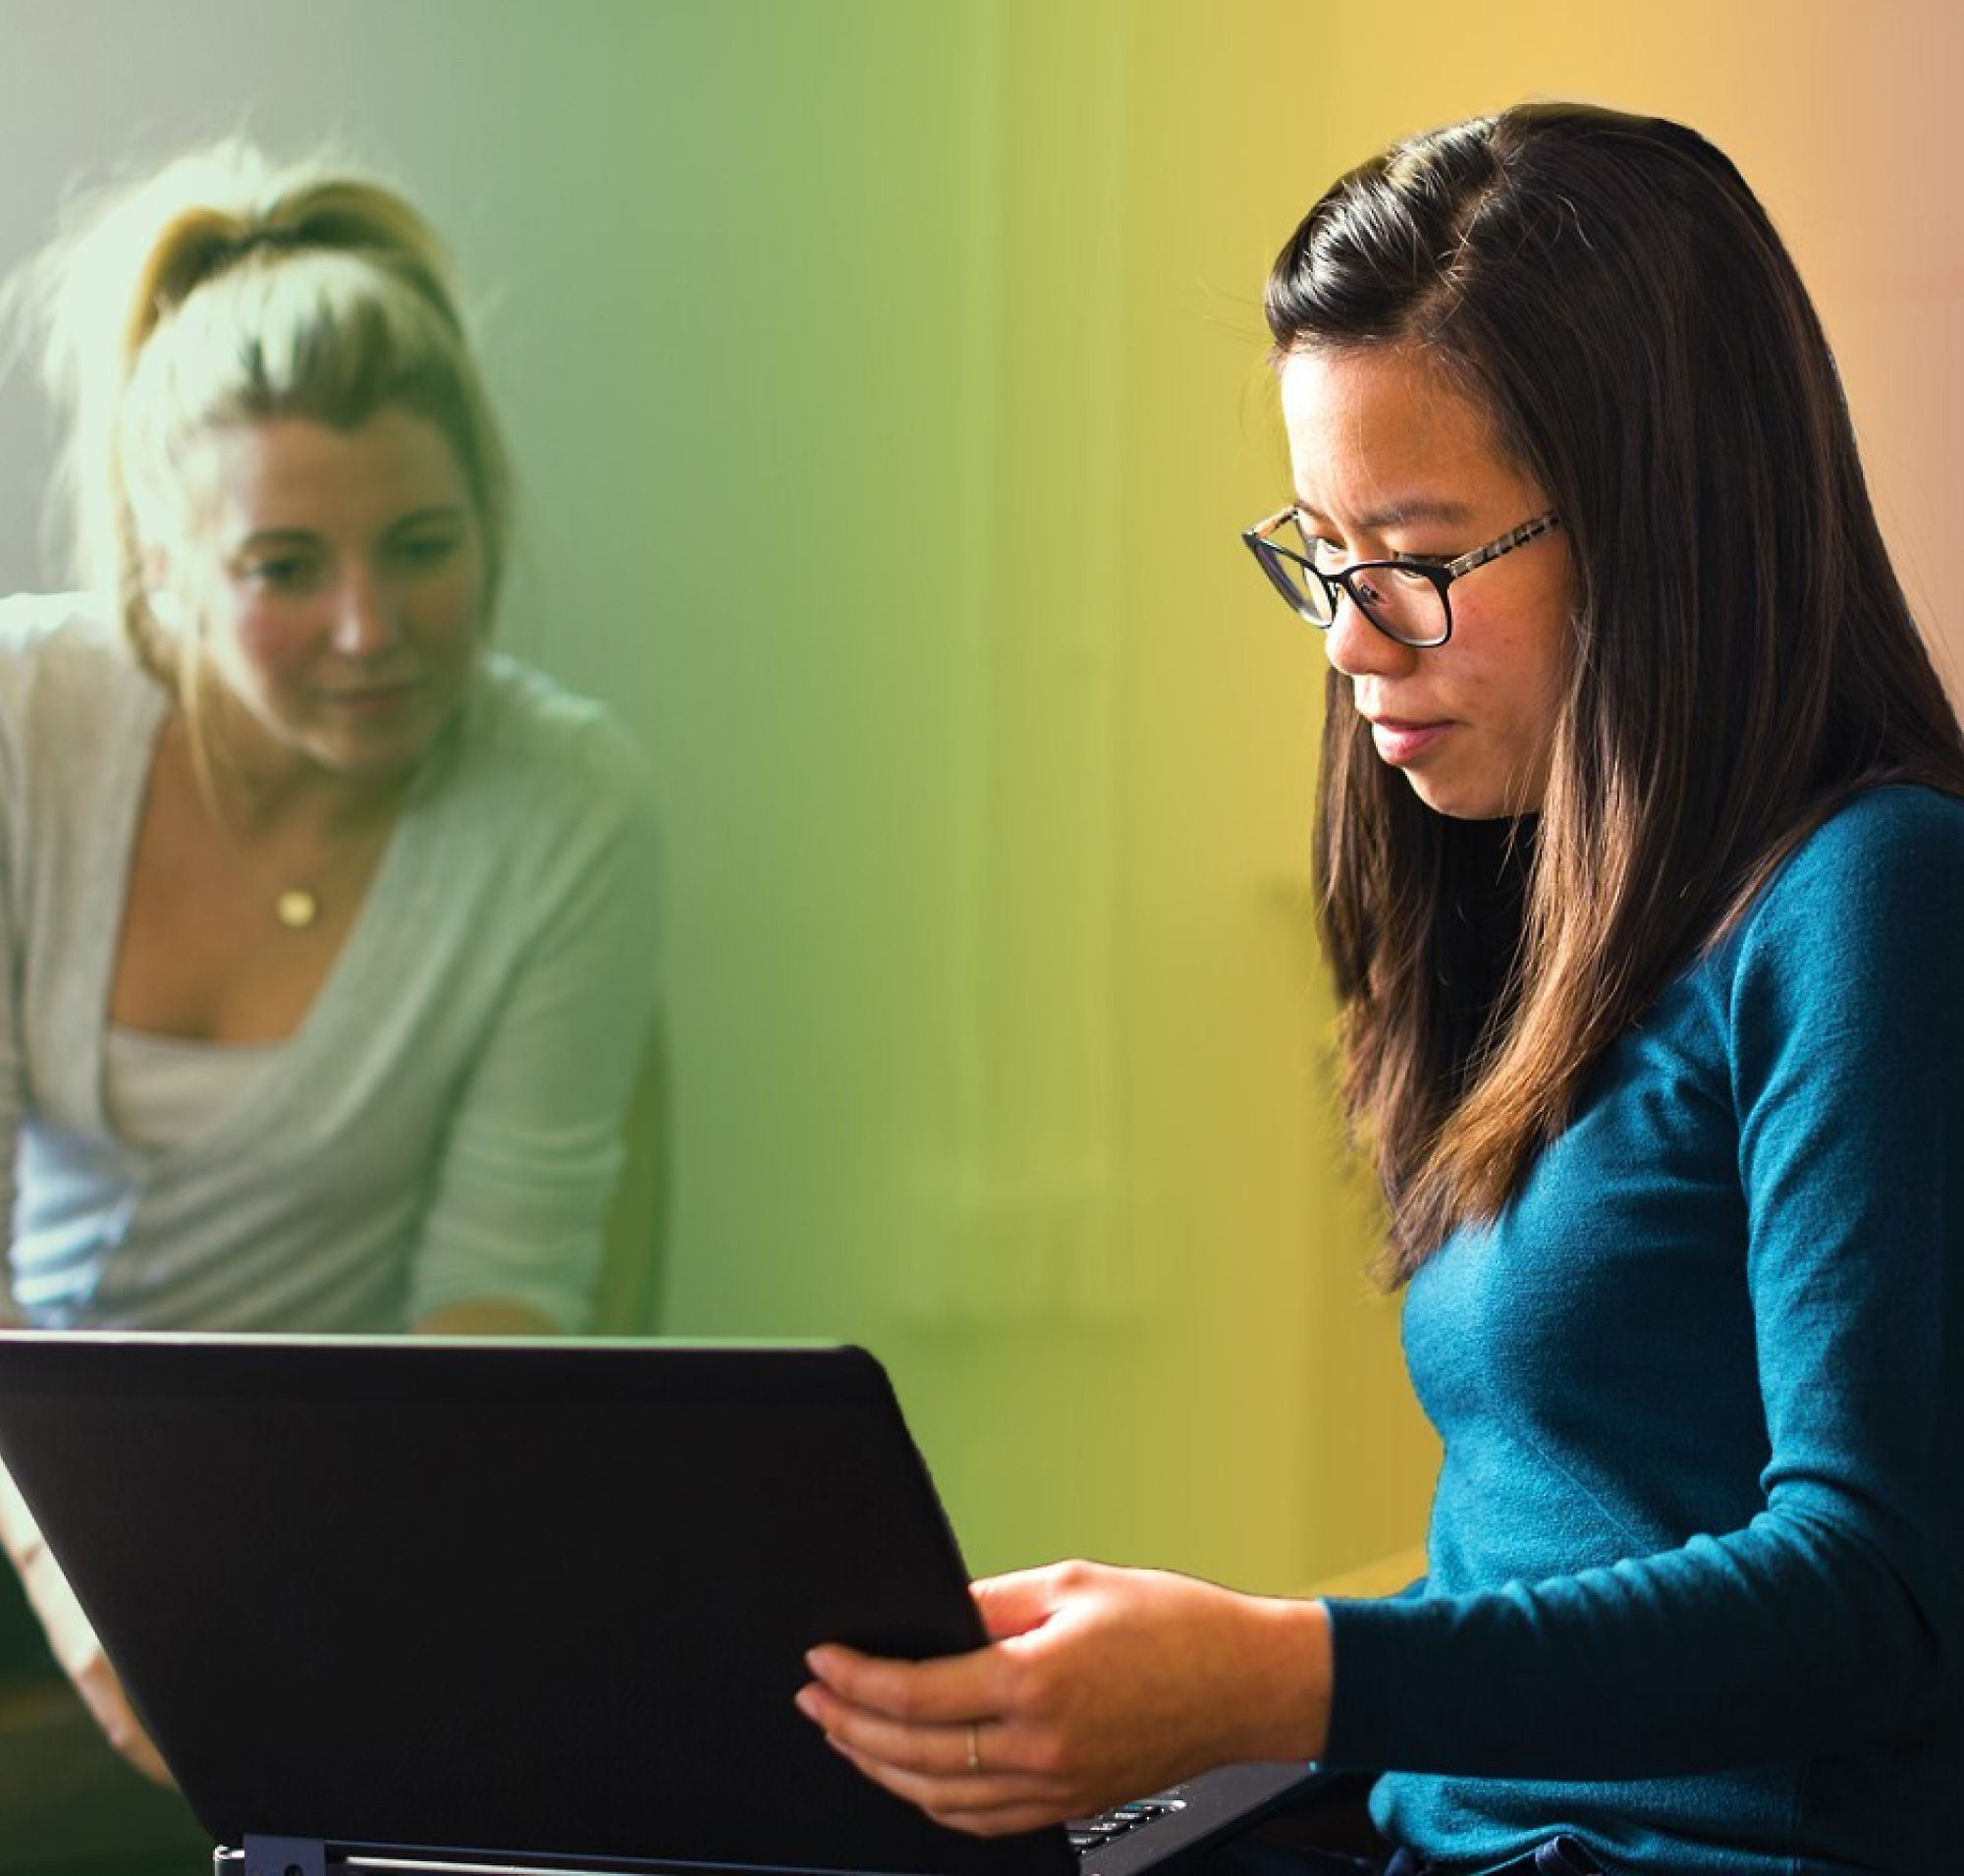 Dwie kobiety, jedna z blond włosami, a druga w okularach, pracują razem na laptopie w kolorowo oświetlonym pomieszczeniu.